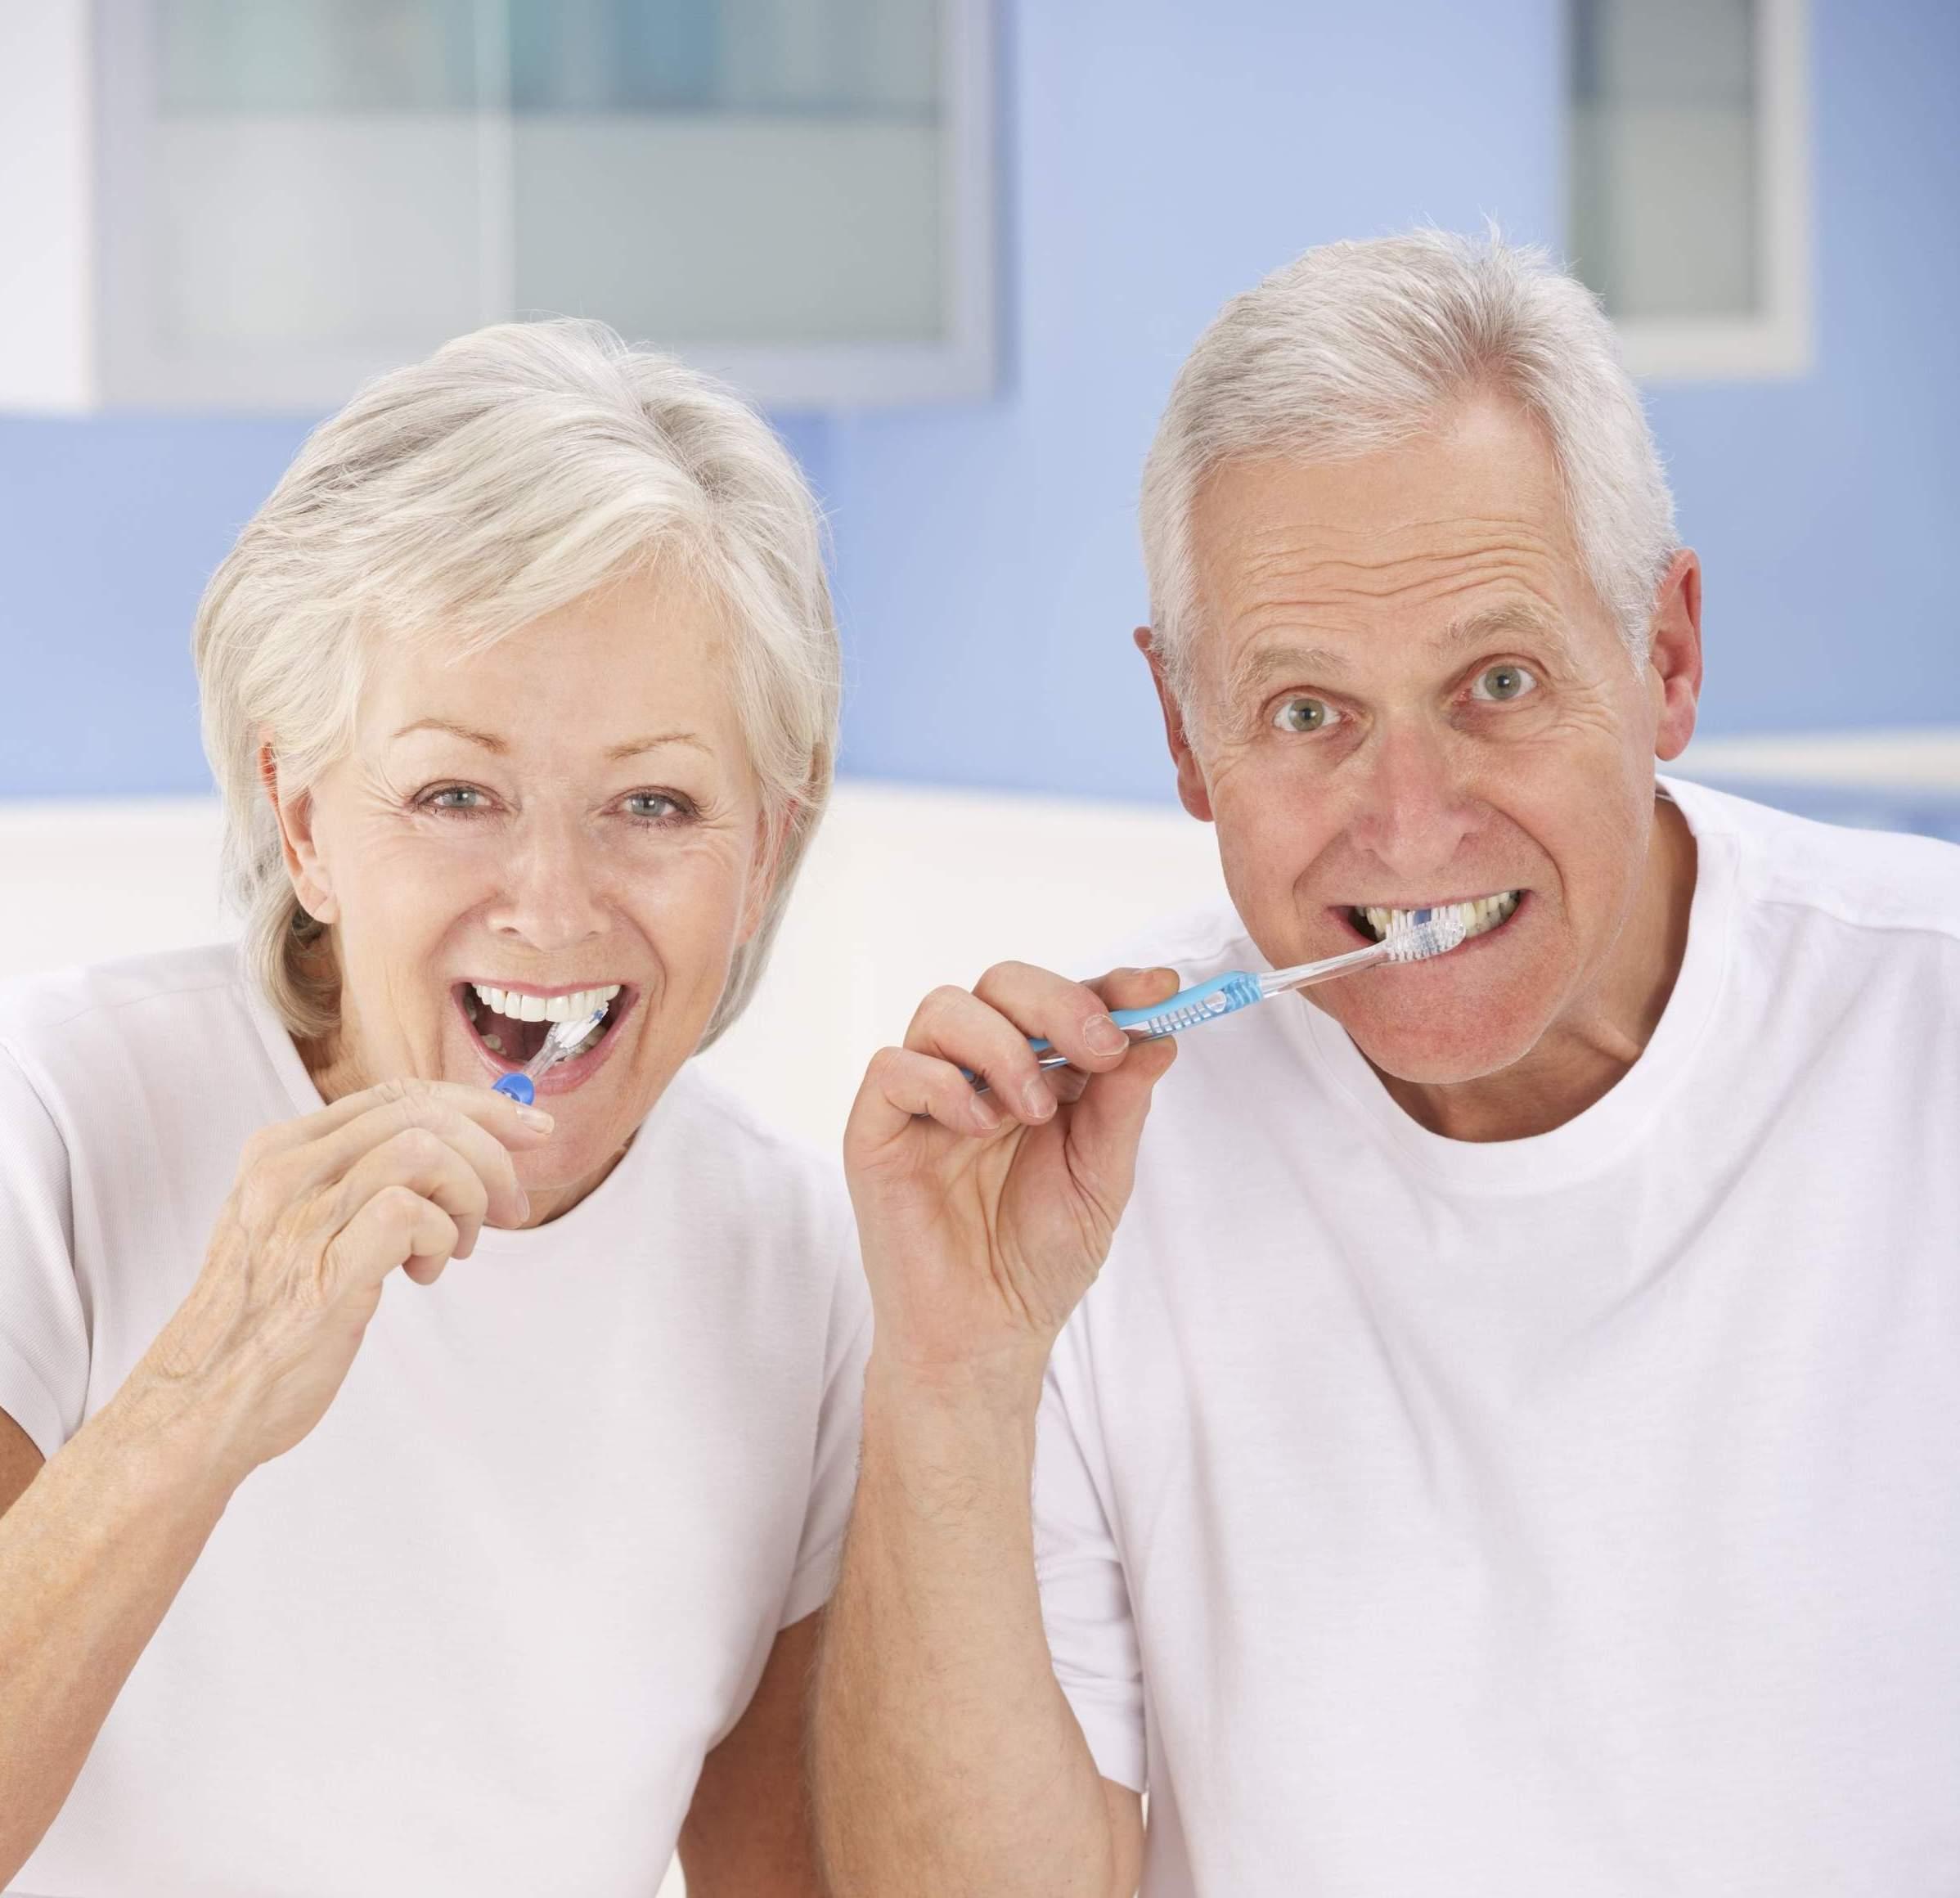 Higijena zuba utječe na opće zdravlje